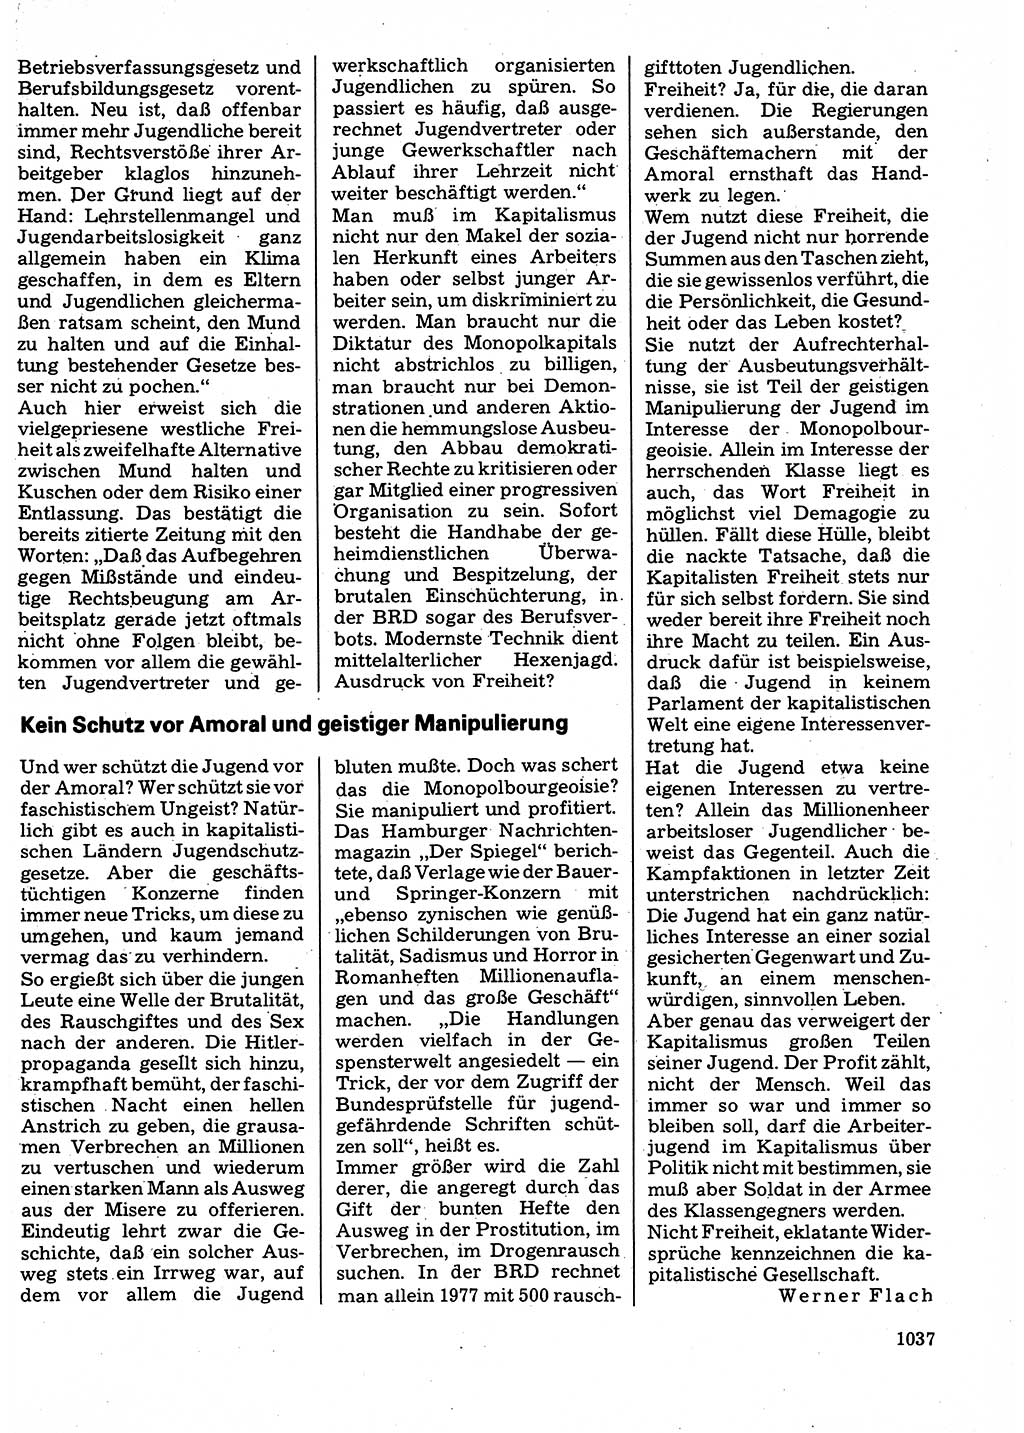 Neuer Weg (NW), Organ des Zentralkomitees (ZK) der SED (Sozialistische Einheitspartei Deutschlands) für Fragen des Parteilebens, 32. Jahrgang [Deutsche Demokratische Republik (DDR)] 1977, Seite 1037 (NW ZK SED DDR 1977, S. 1037)